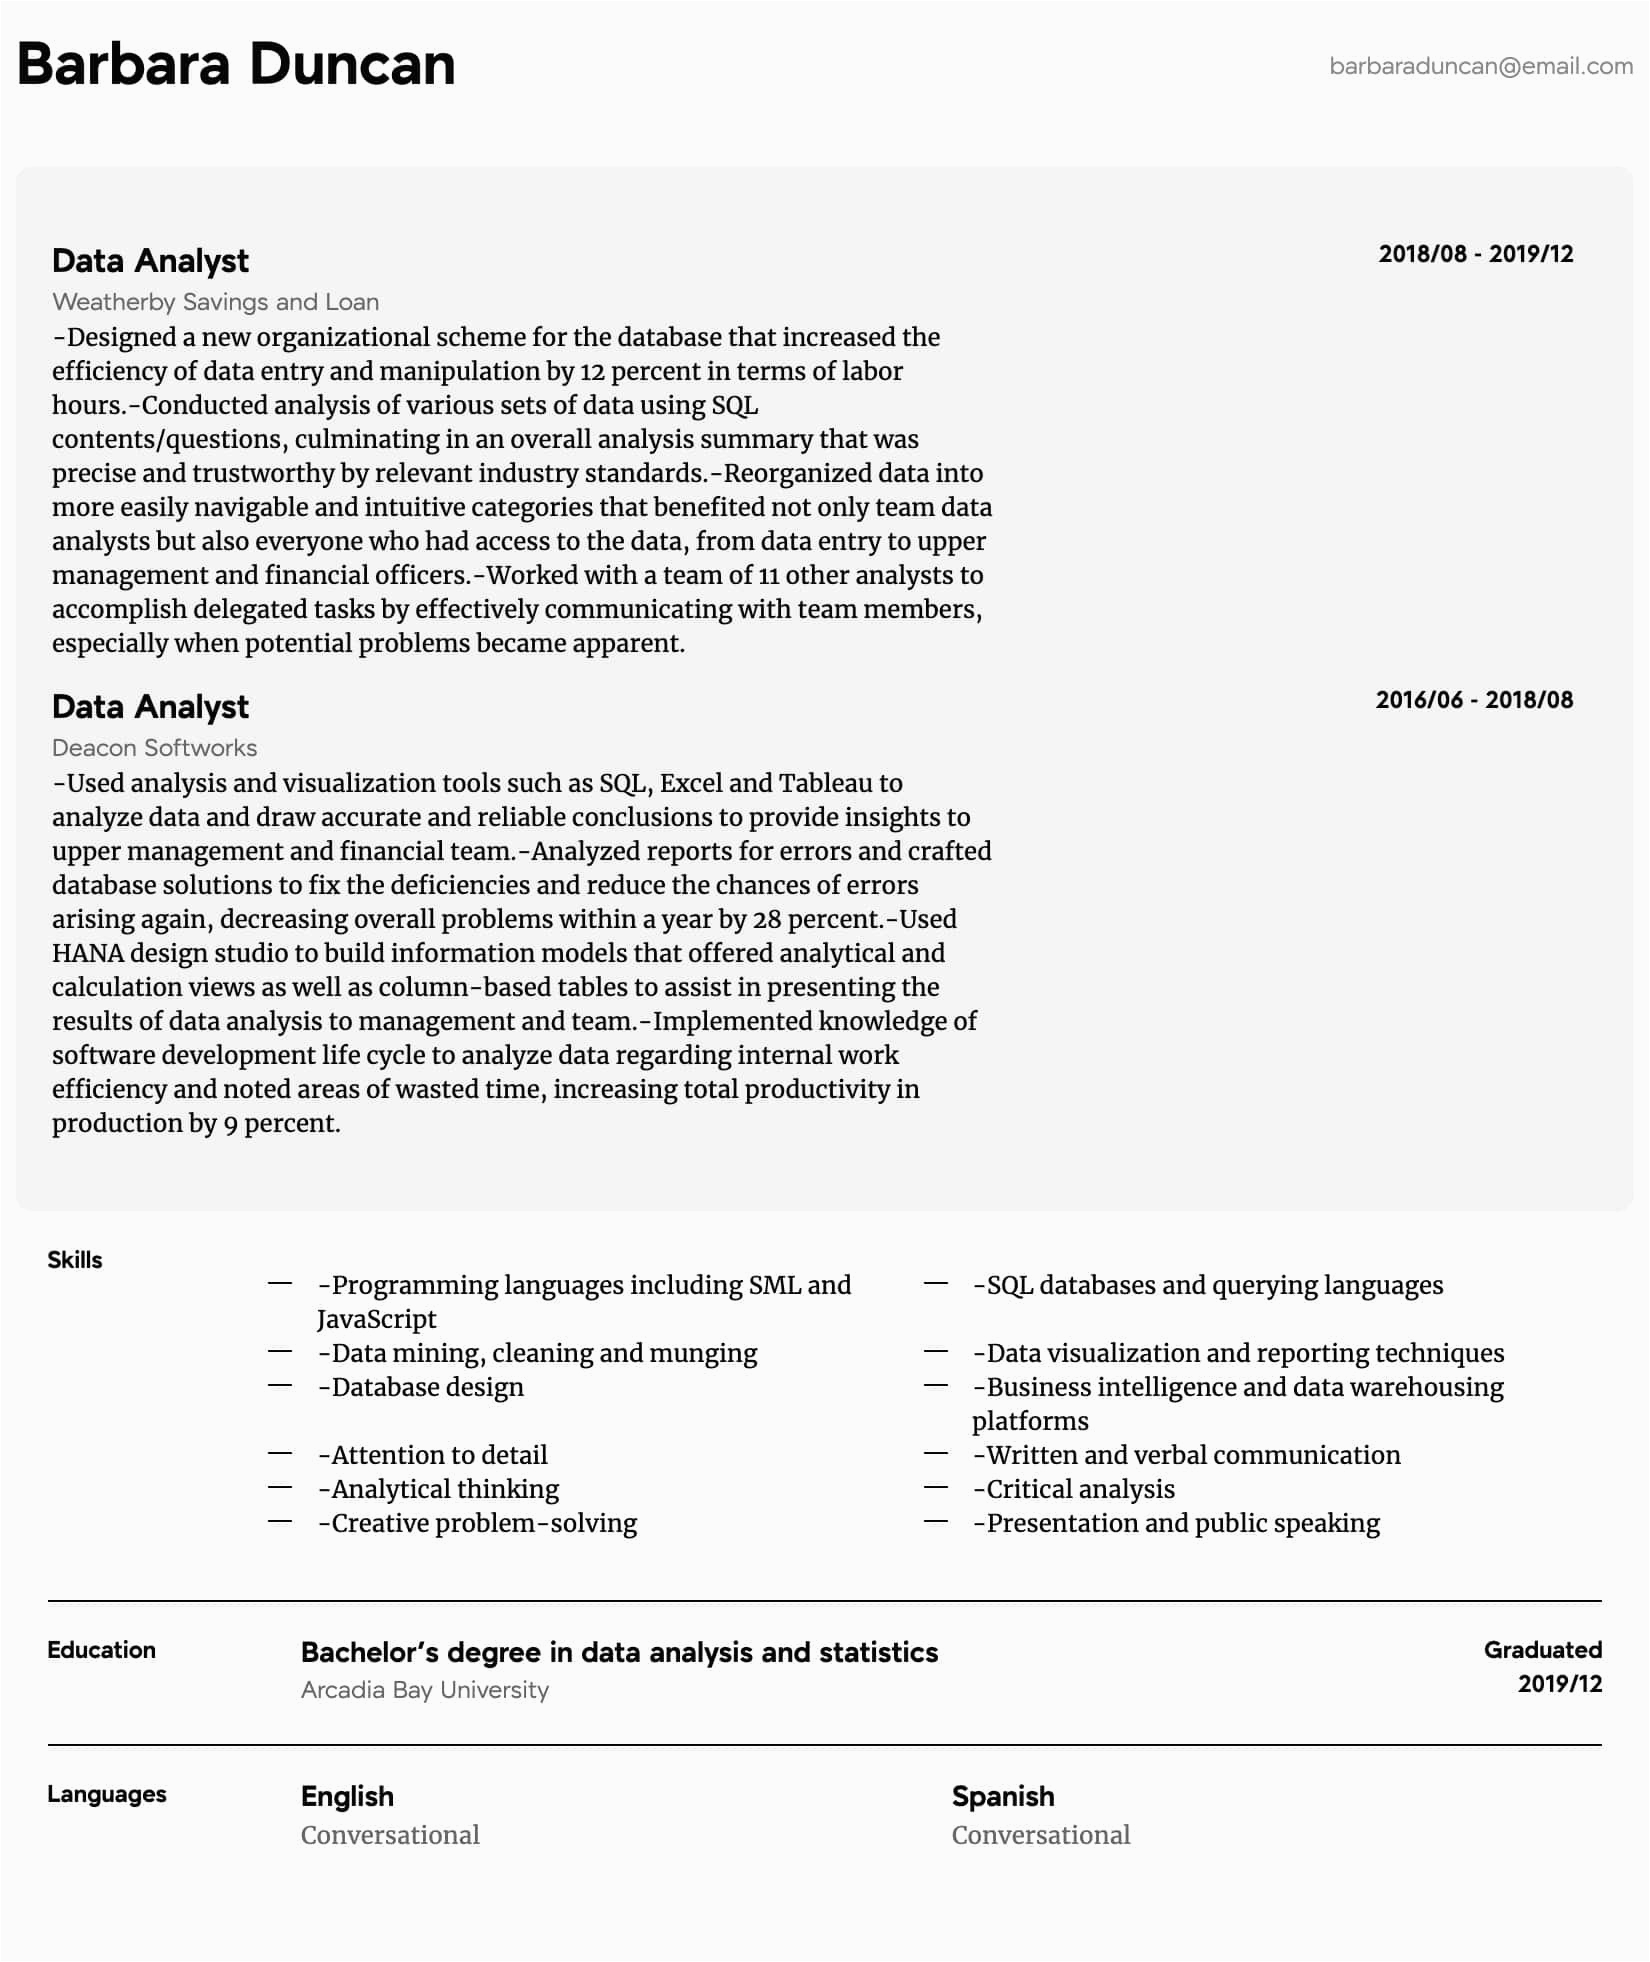 Data Analyst Resume Entry Level Sample Data Analyst Resume Samples